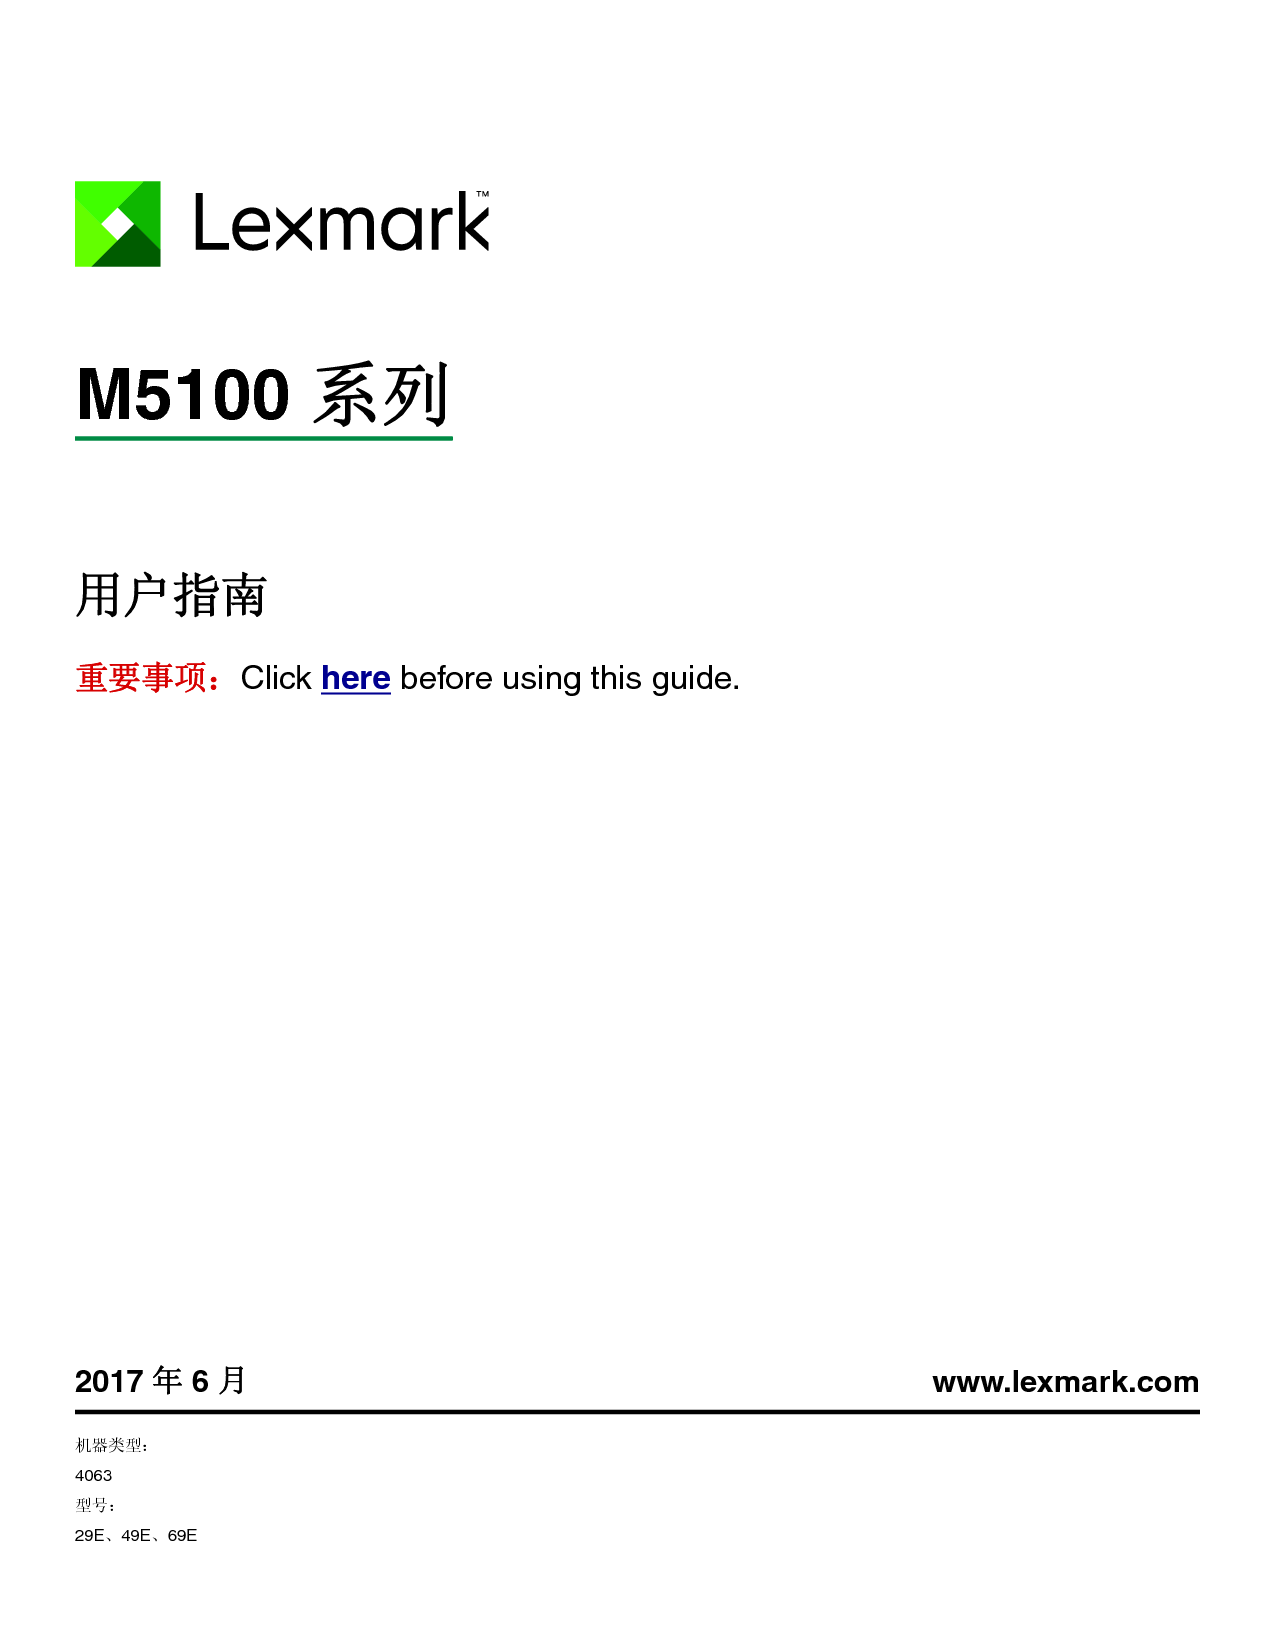 利盟 Lexmark M5155, M5163, M5170 用户指南 封面